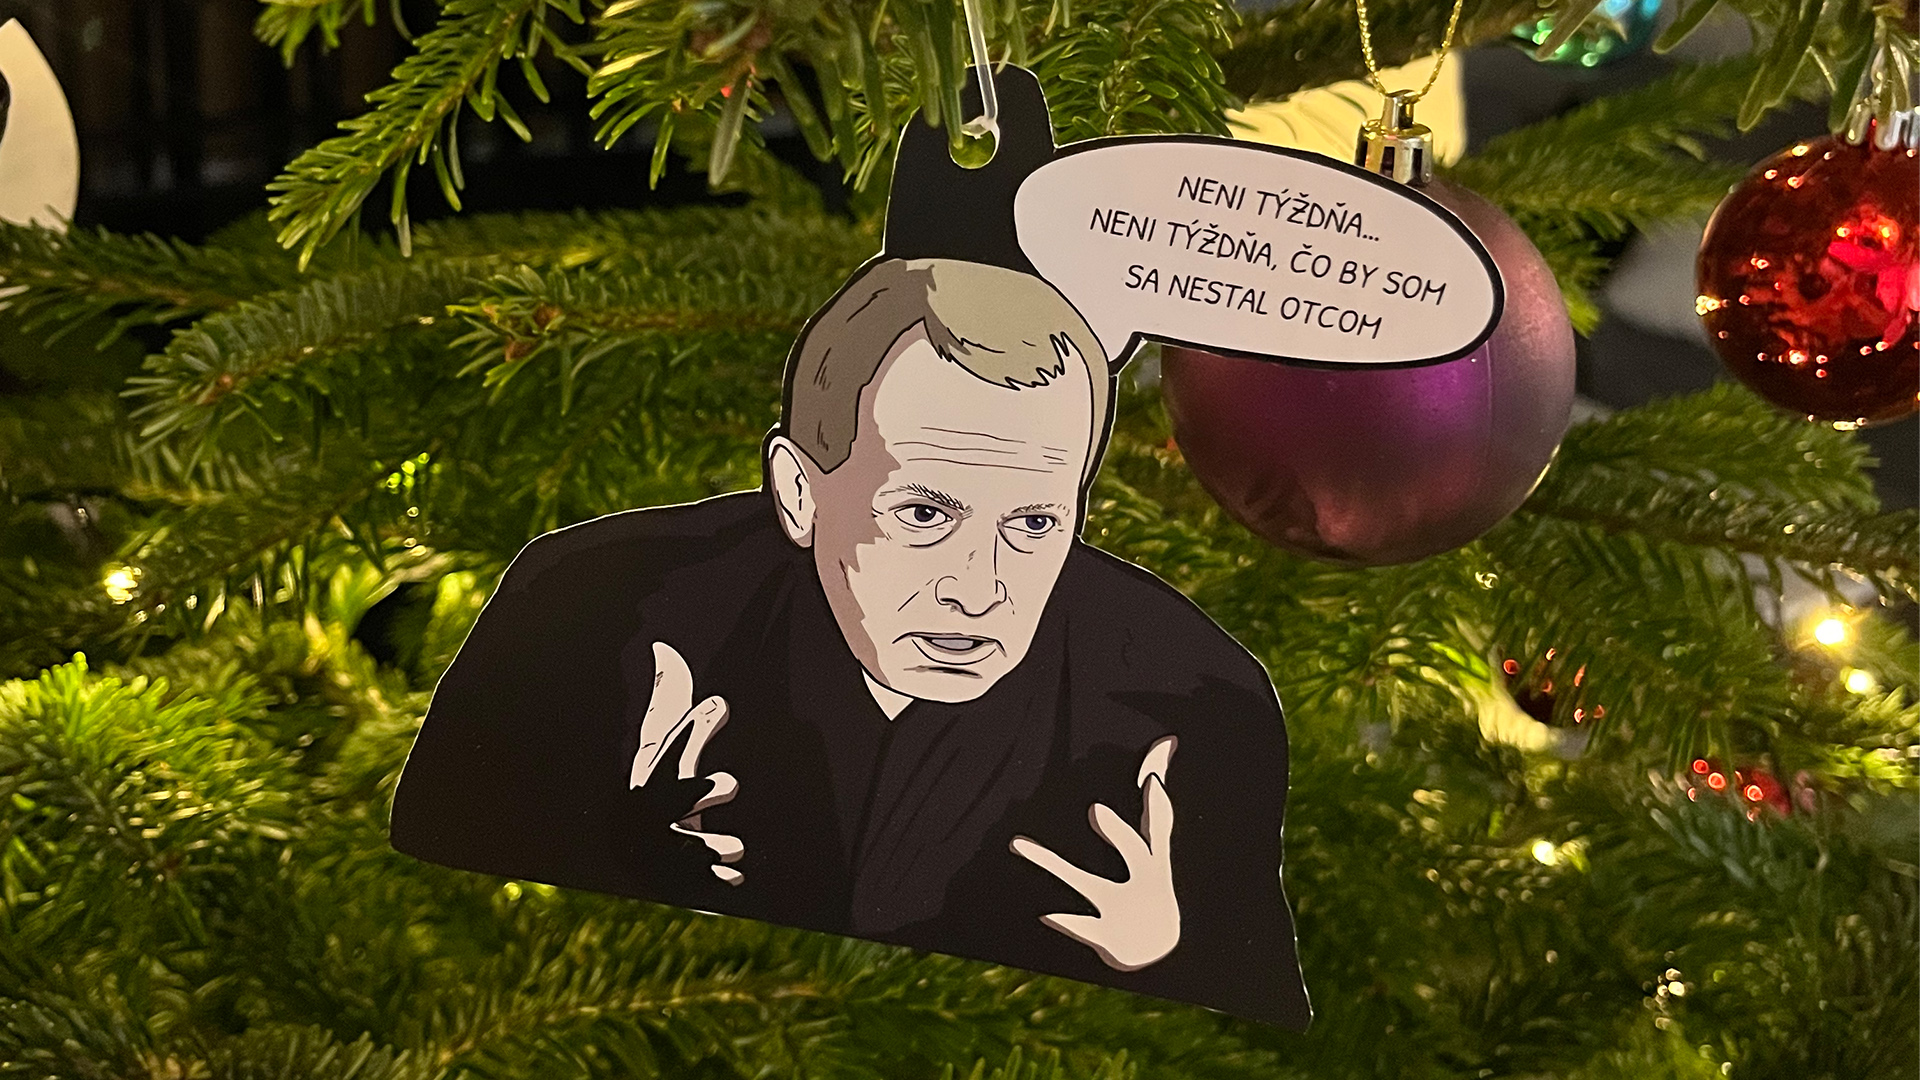 Vianočné ozdoby z dielne EMEFKA s motívmi populárnych memes roku 2022